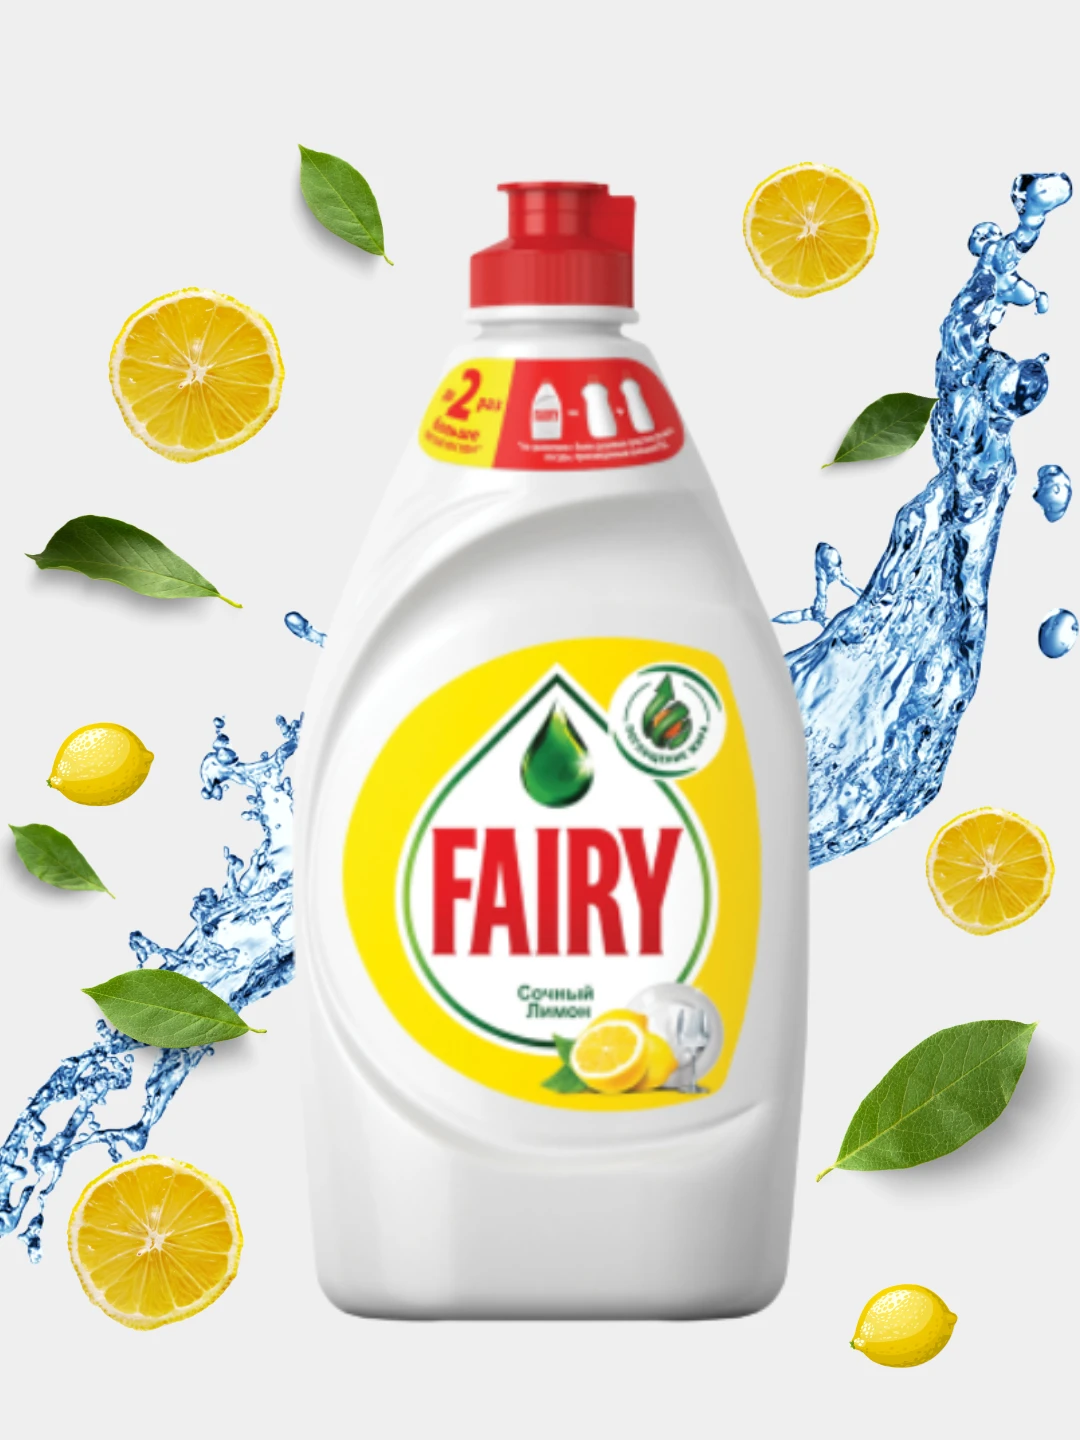 Средство для мытья посуды fairy сочный лимон. Fairy сочный лимон 450 мл. Ср-во д/посуды "Фейри " лимон 450мл. Fairy жидкость для мытья посуды Lemon 450мл. Фейри 450 мл.